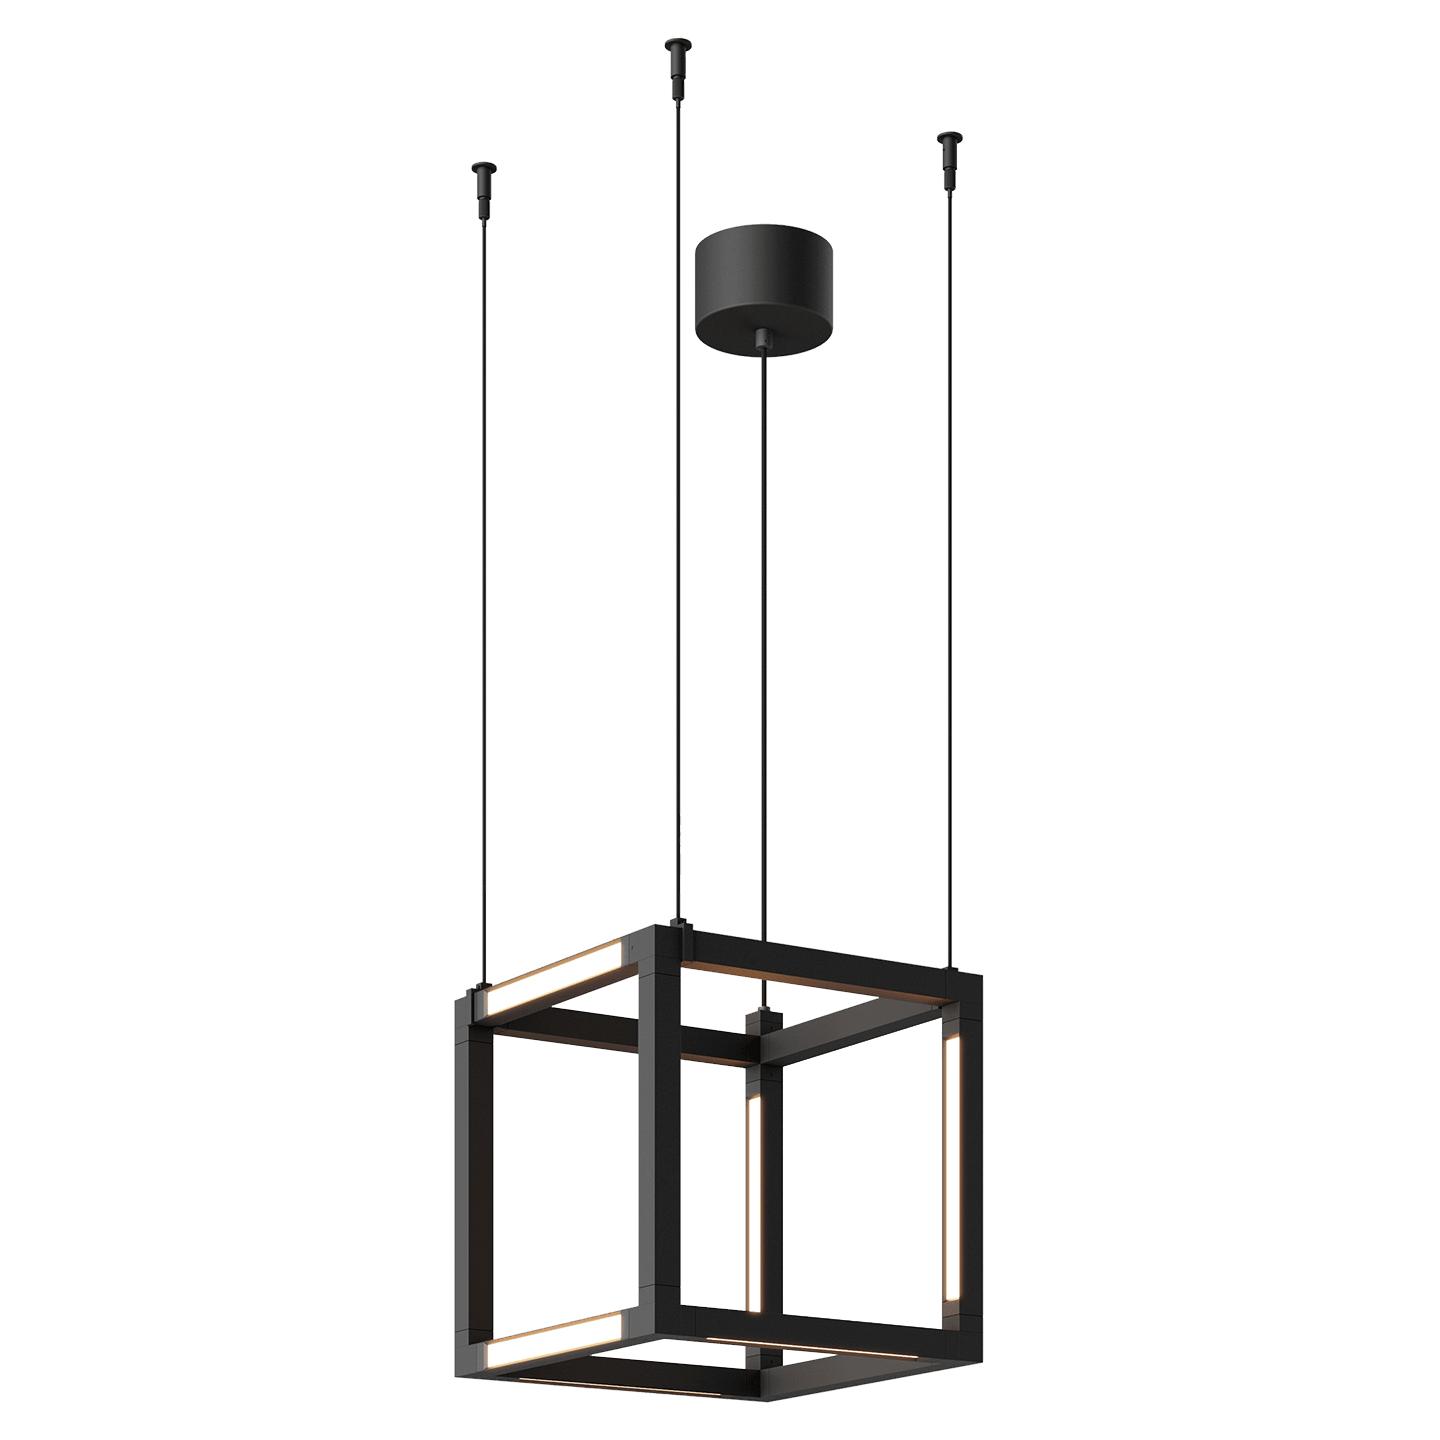 Купить Подвесной светильник Brox Cube 12 Pendant в интернет-магазине roooms.ru